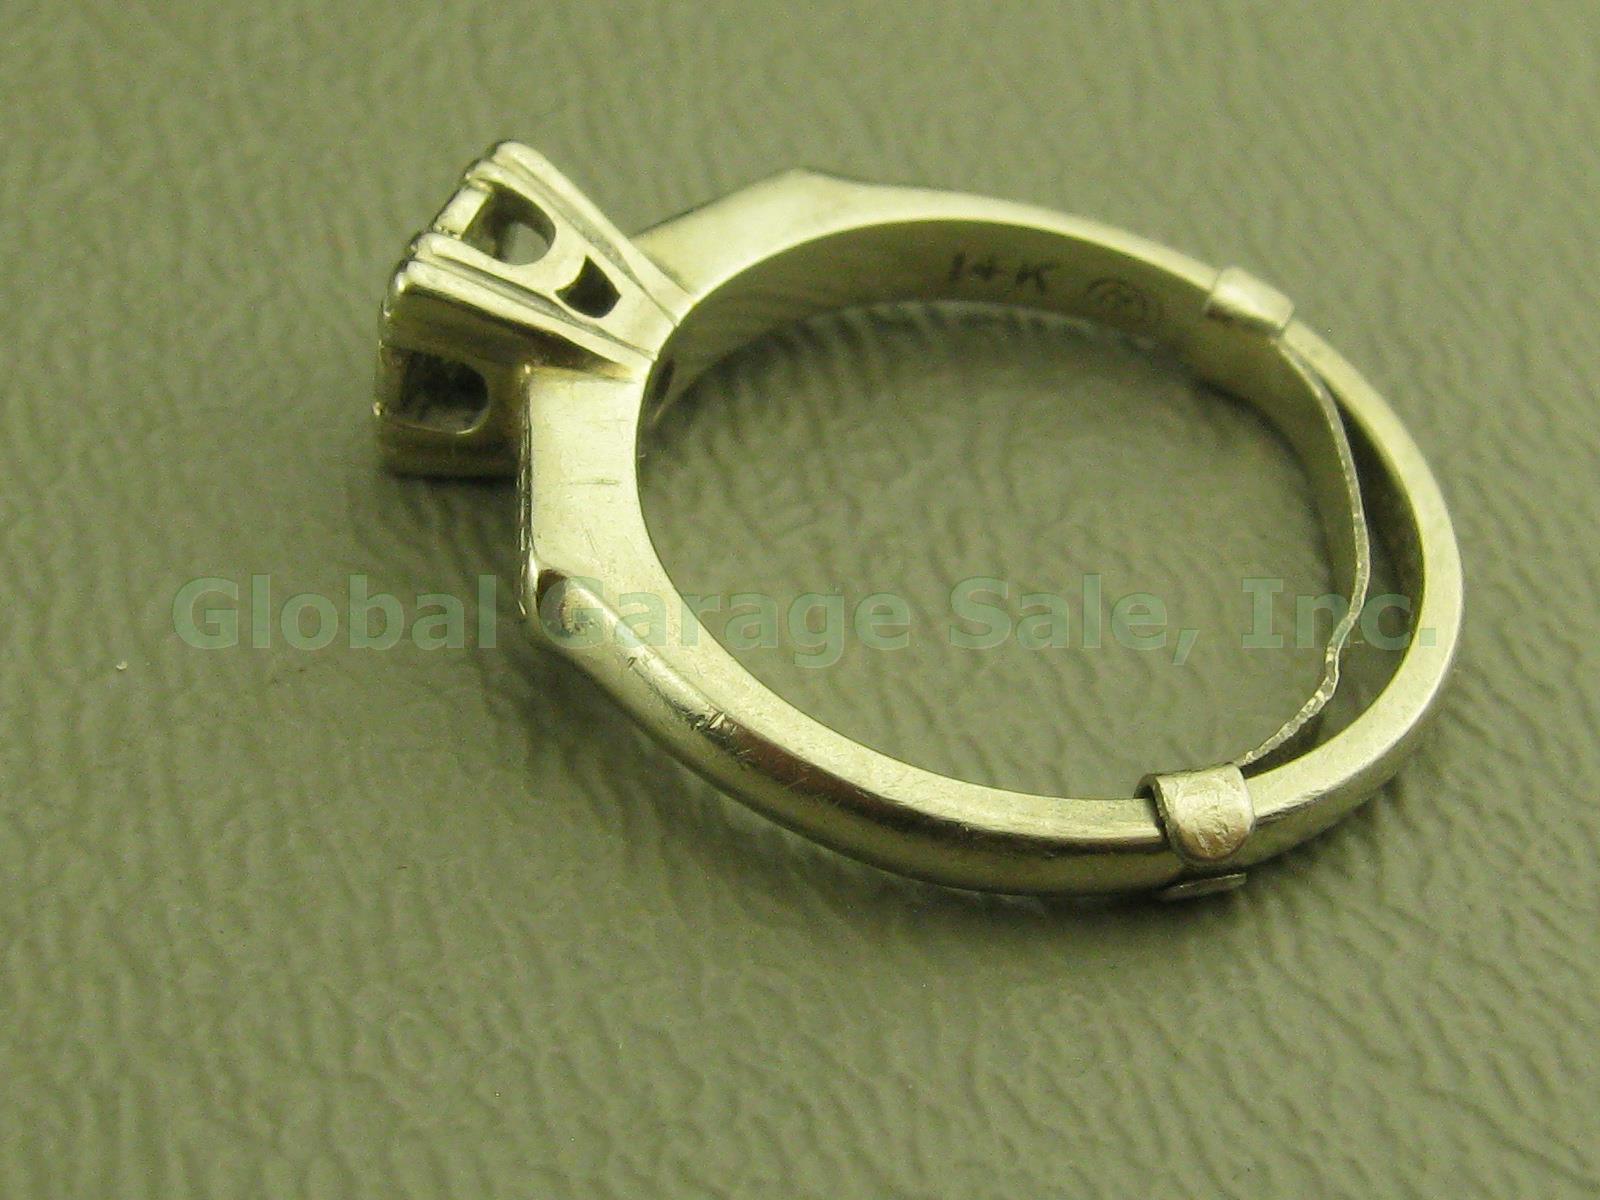 Vtg 14k White Gold Diamond Solitaire Engagement Ring Band W/Insert 4.25-4.5 2.9g 3